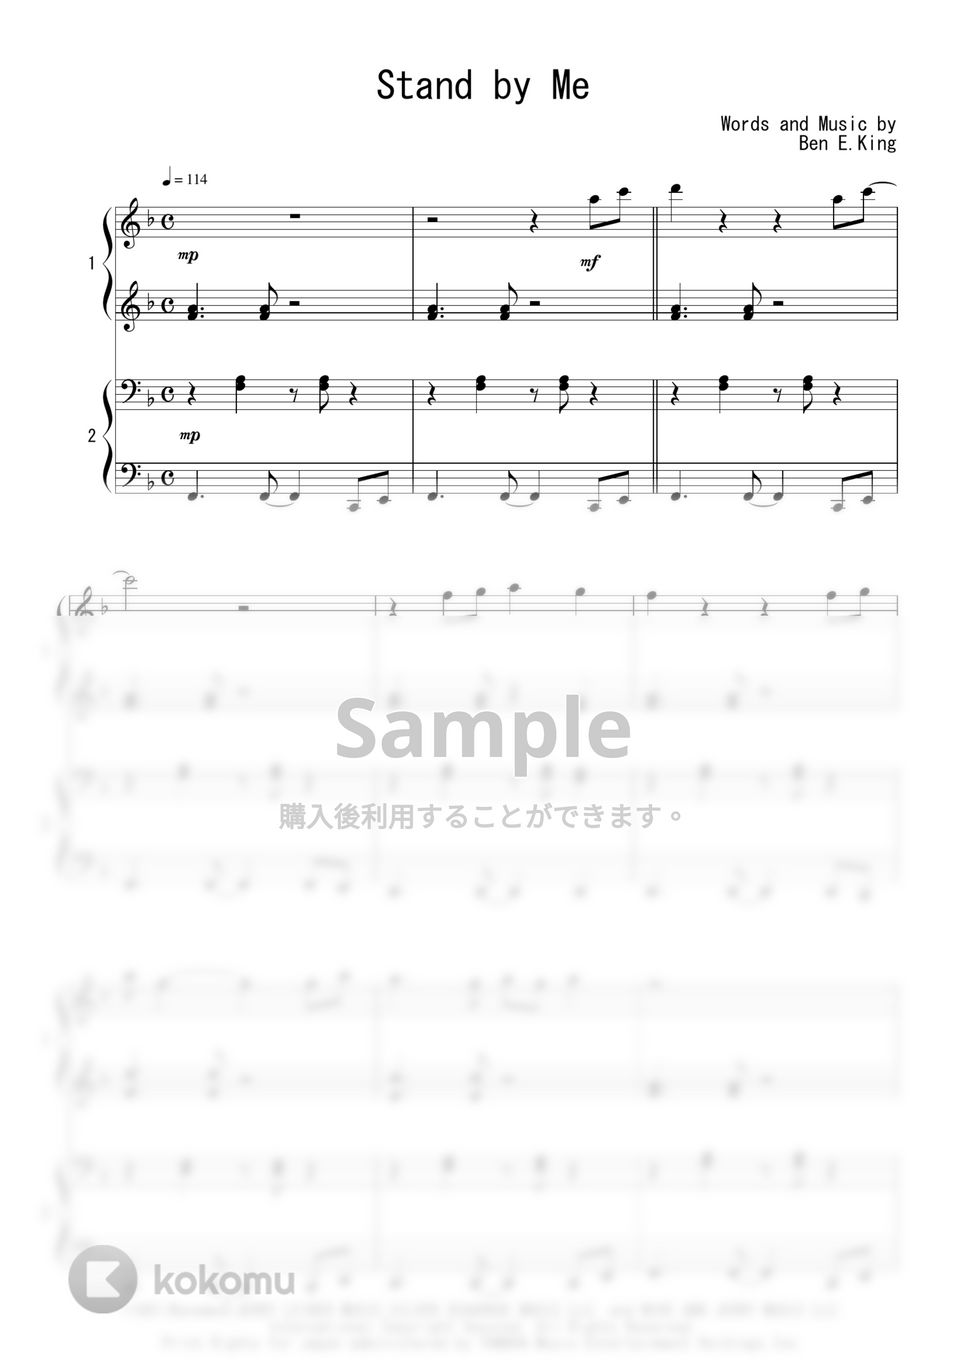 映画『スタンド・バイ・ミー』OST - Stand by Me (連弾) by Peony